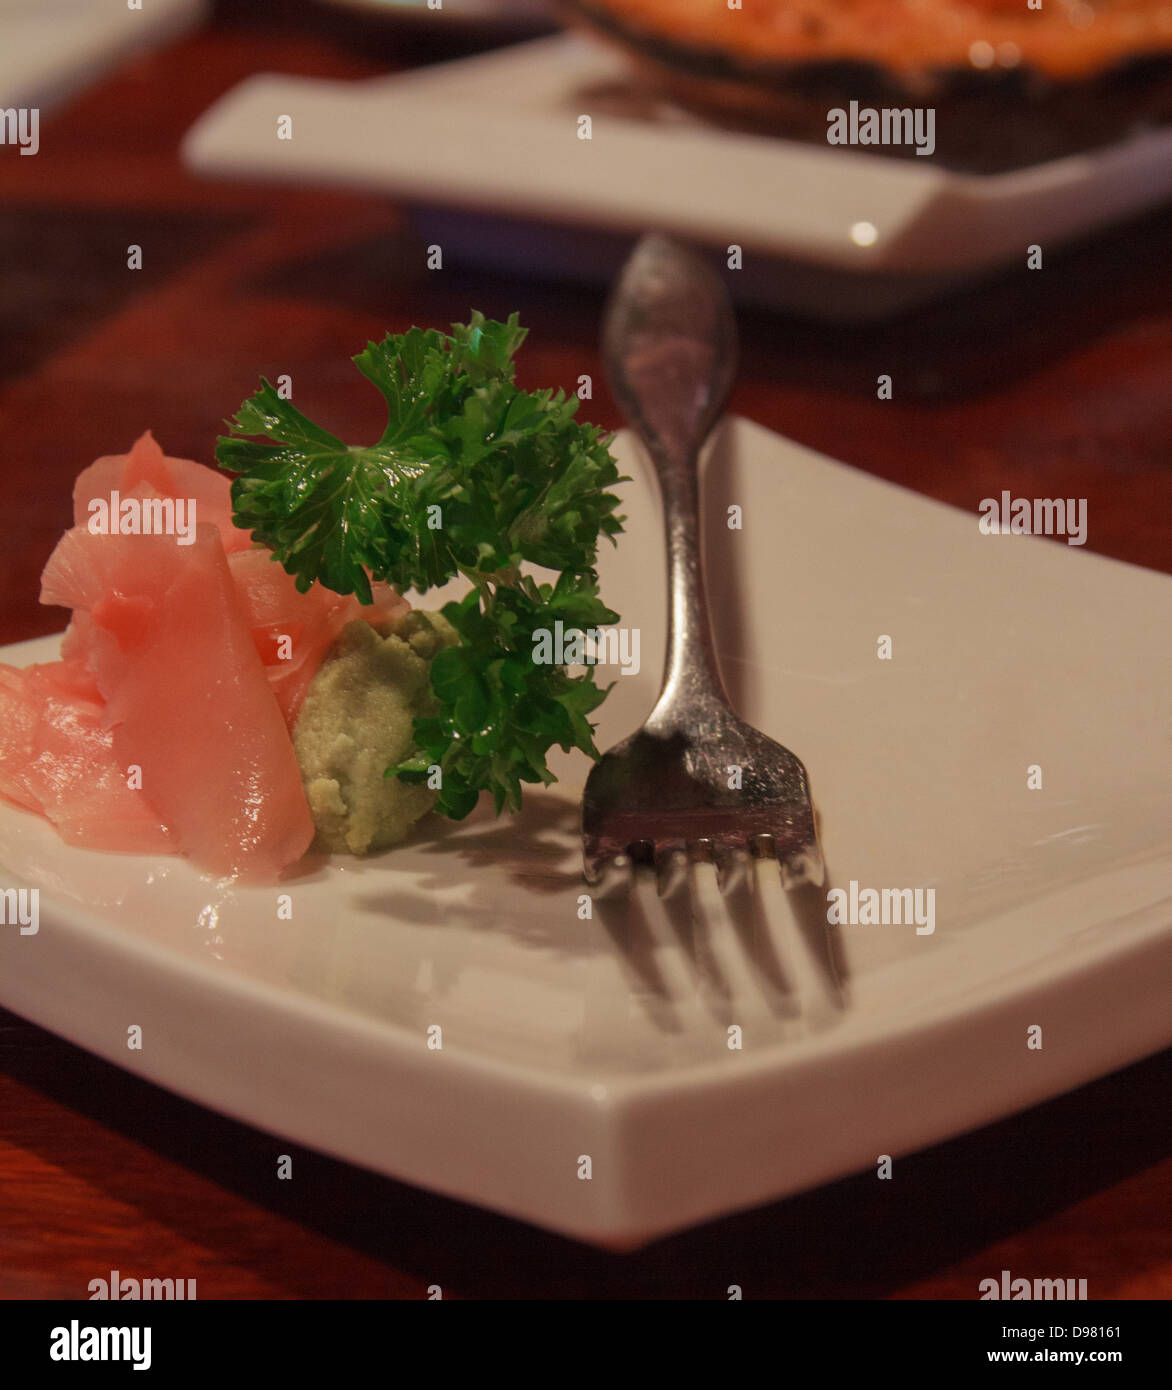 Plaque sushi avec du gingembre, wasabi, le persil et une fourchette Banque D'Images